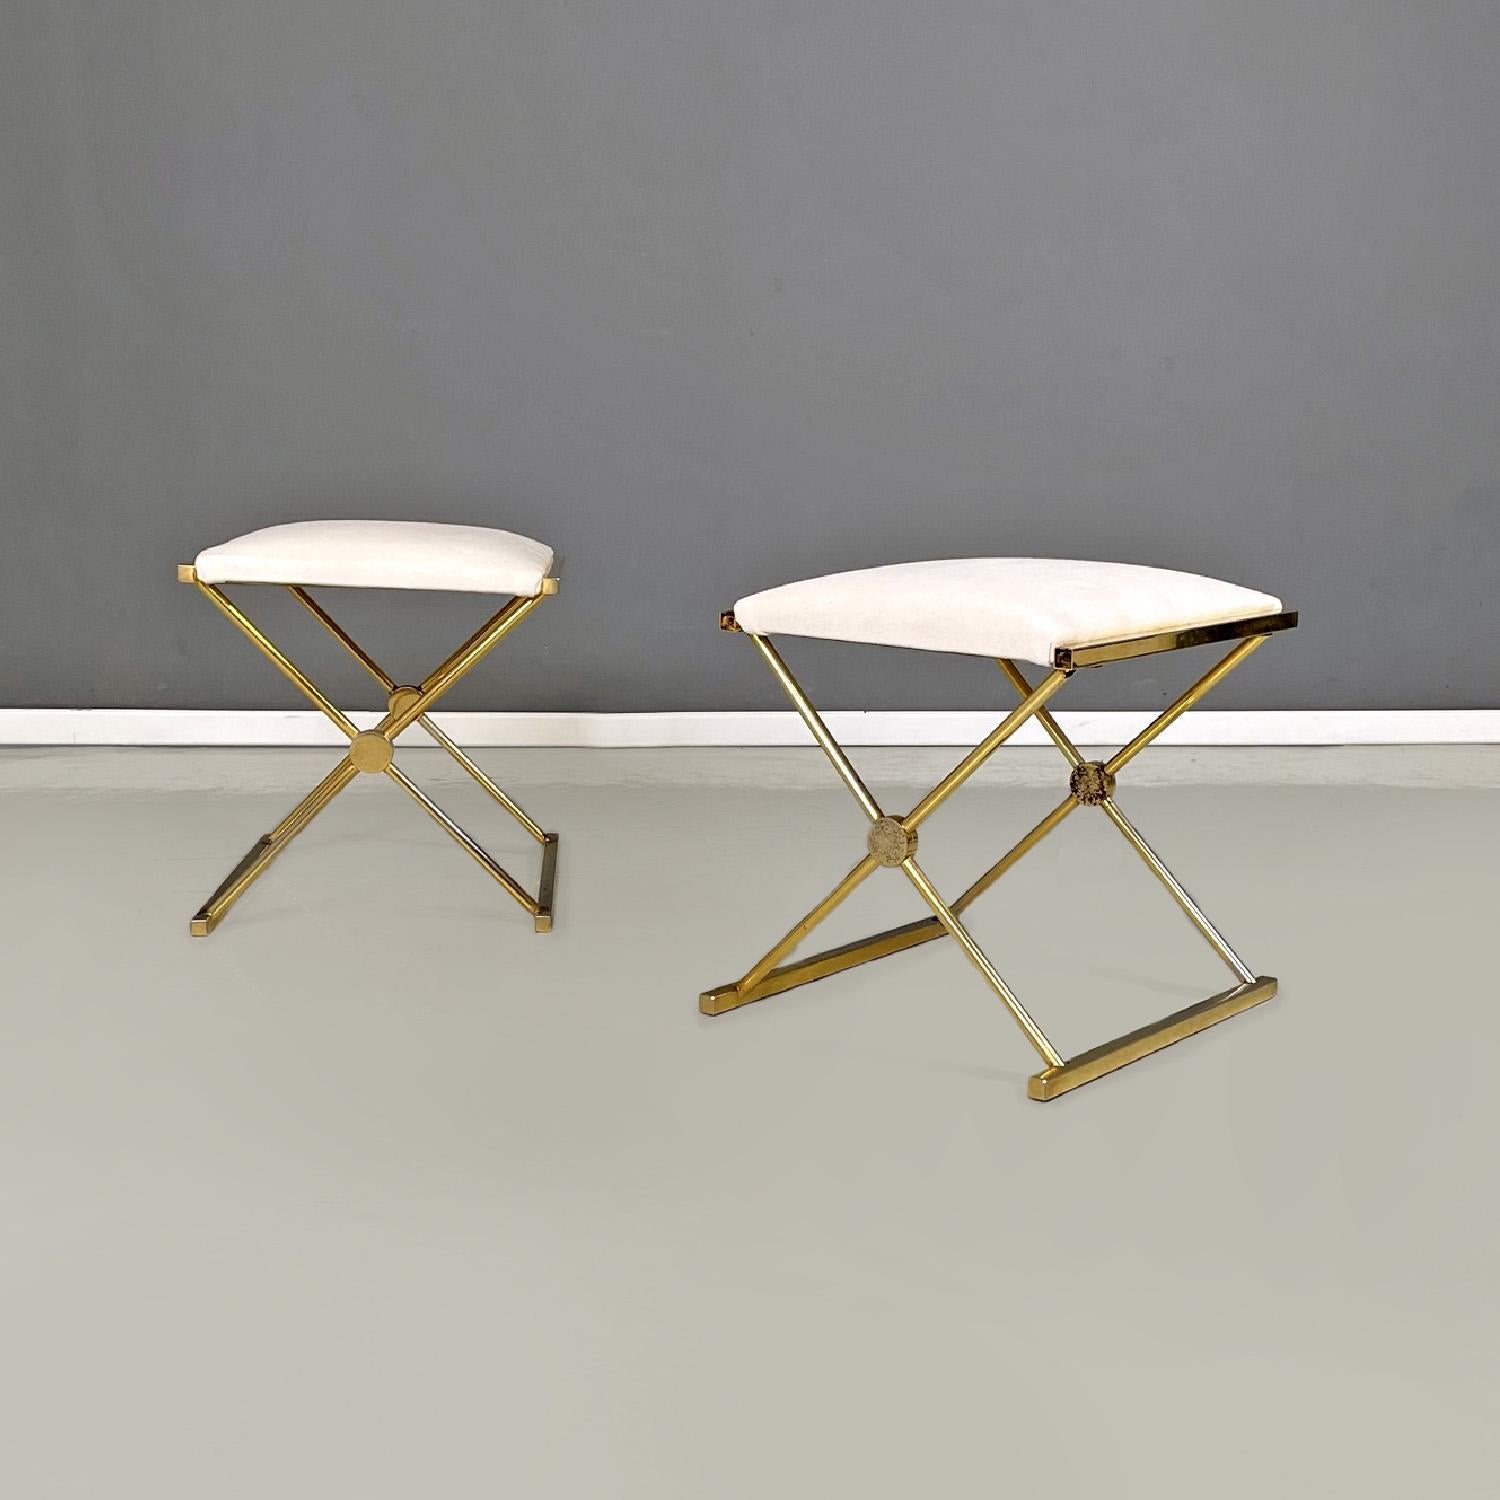 Italienische moderne Hocker aus goldenem Metall und weißem Stoff, 1980er Jahre
Set aus vier Hockern mit gepolstertem, rechteckigem Sitz, bezogen mit weißem Stoff. Die Struktur aus vergoldetem Metall kreuzt sich auf zwei Seiten, um die Beine und die